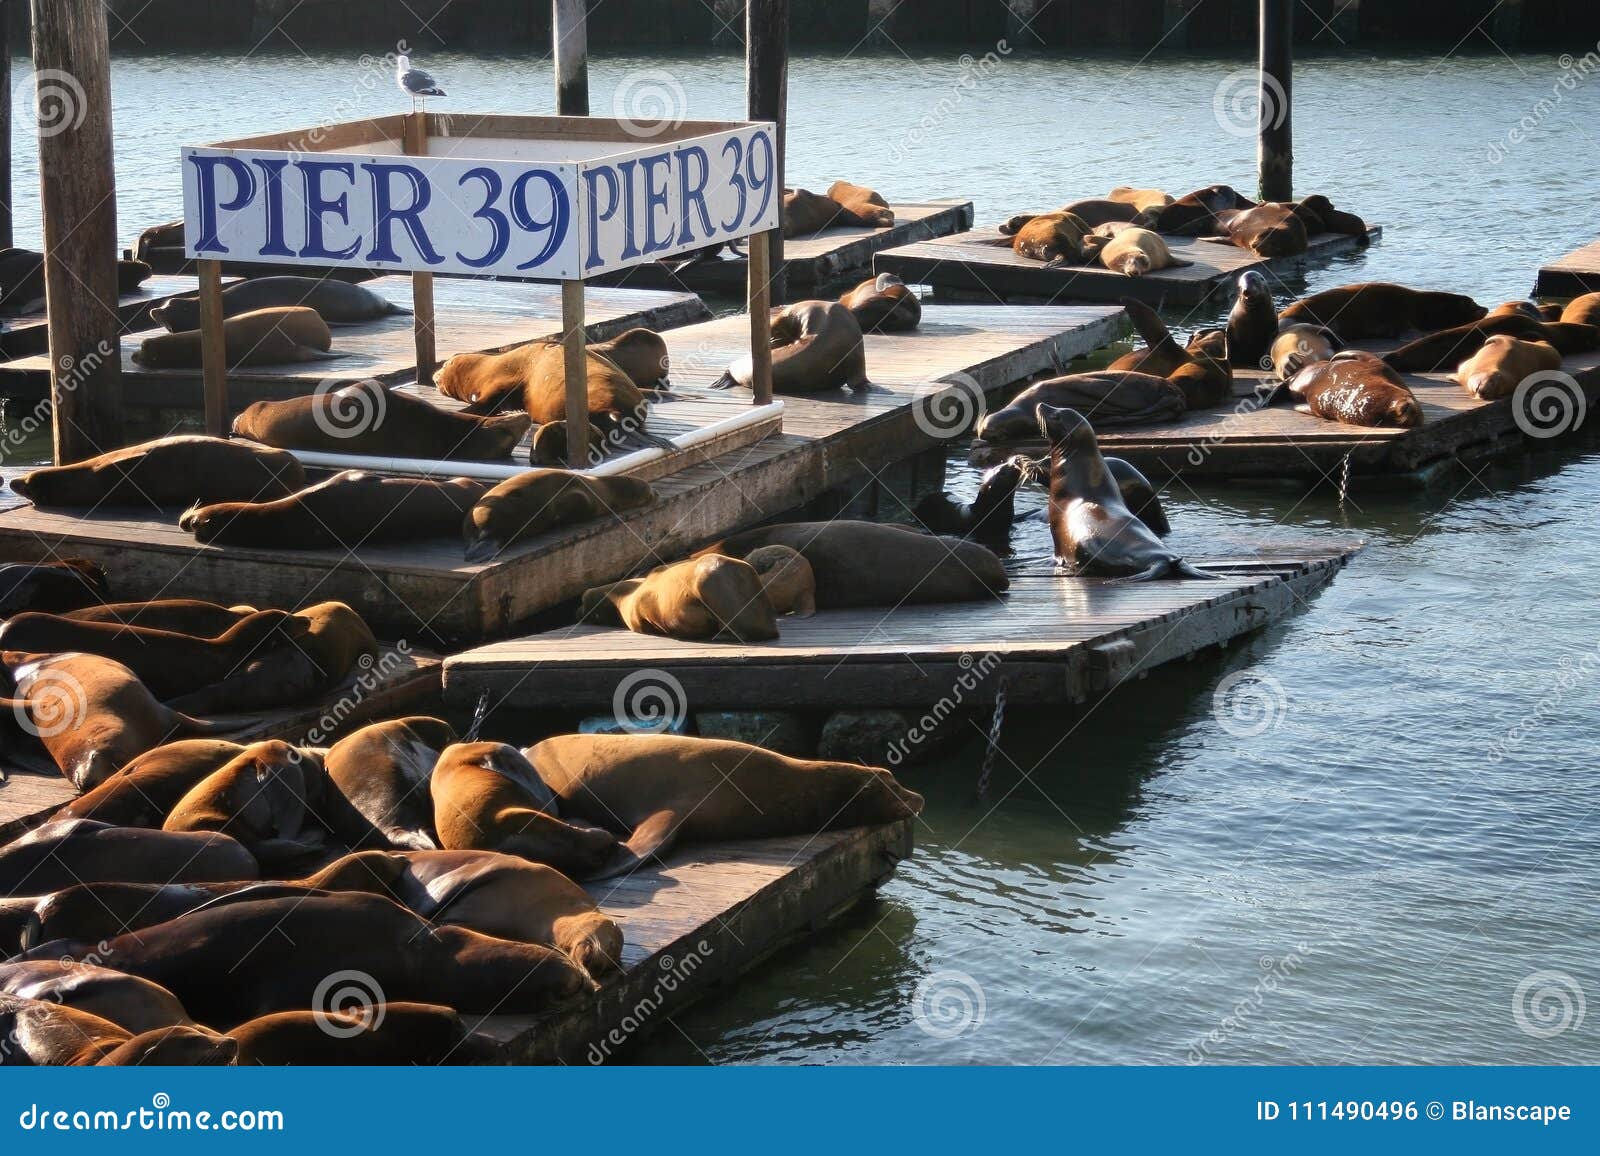 sea lions at pier 39, san franscisco